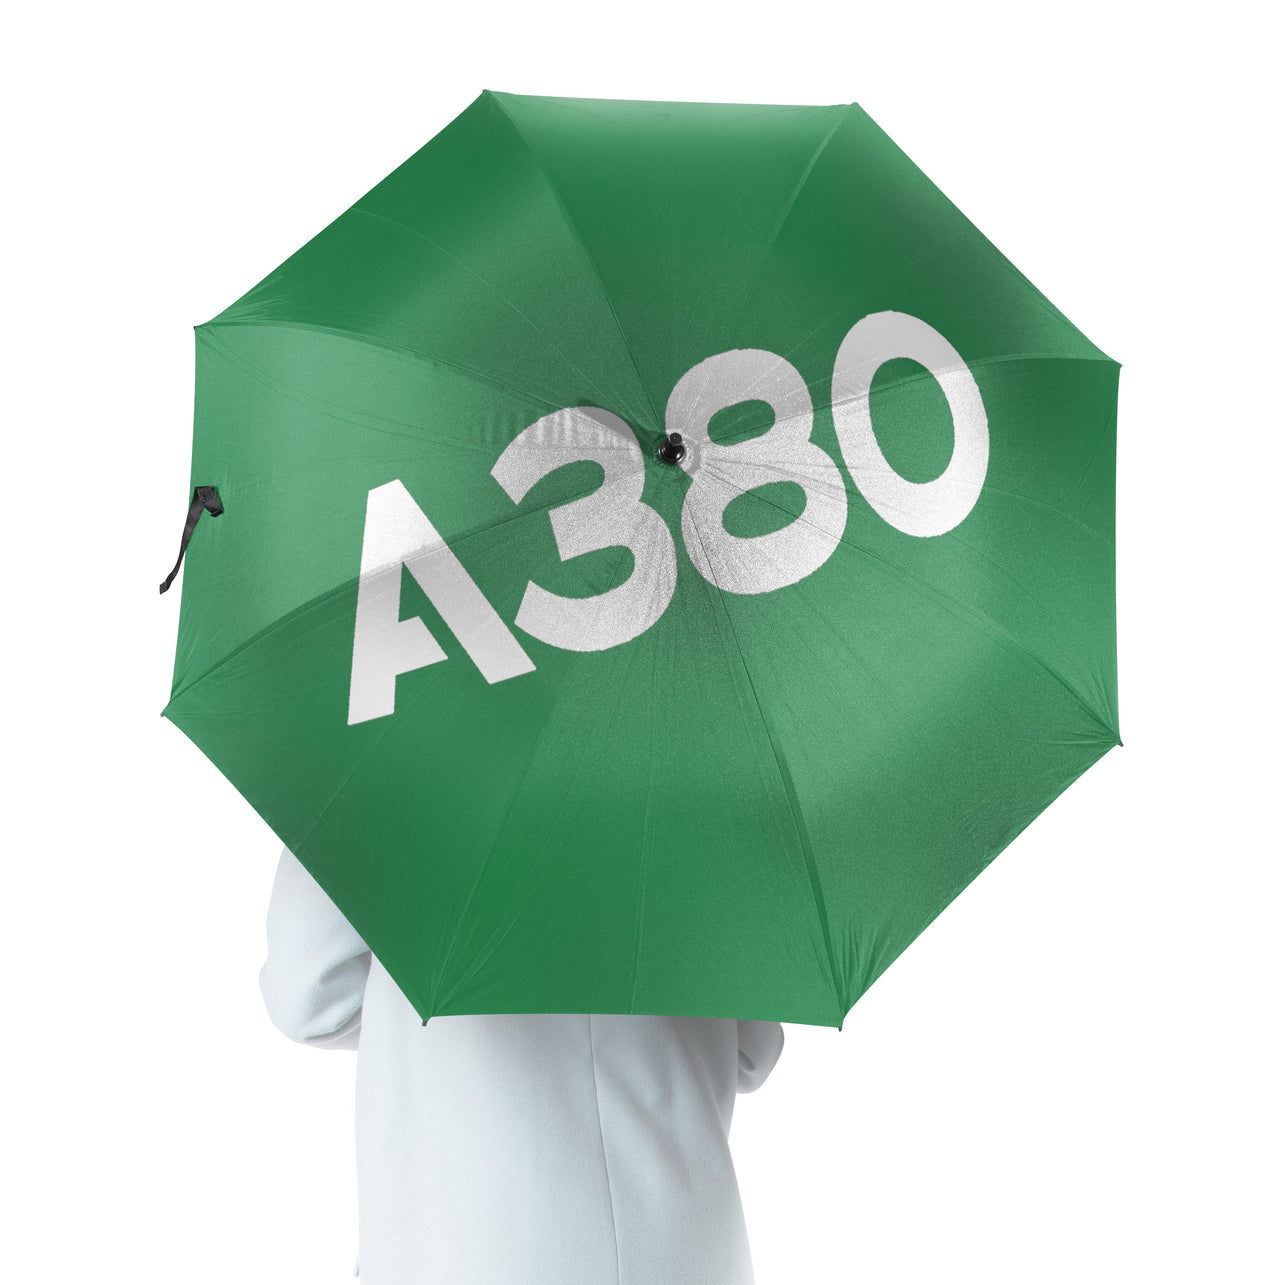 A380 Flat Text Designed Umbrella